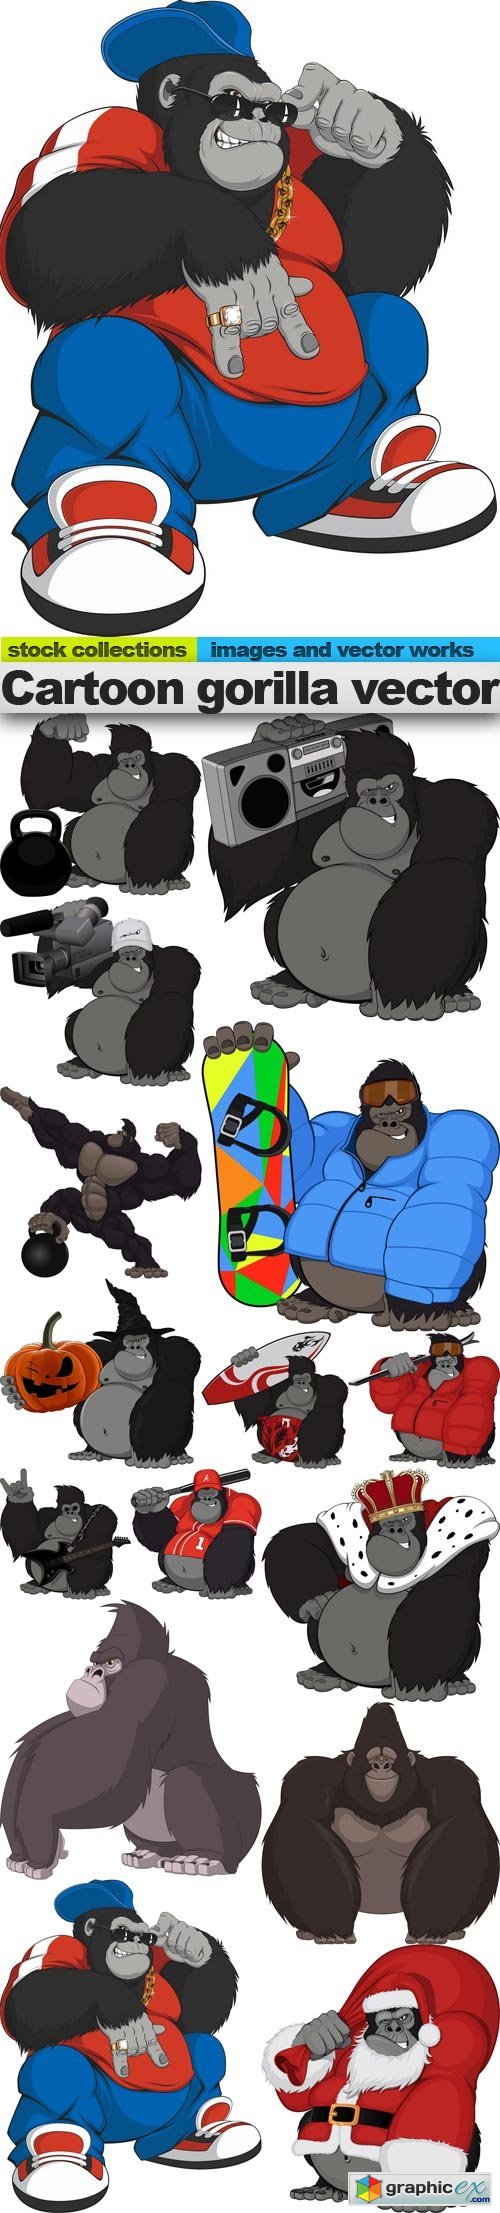 Cartoon gorilla vector, 15 x EPS